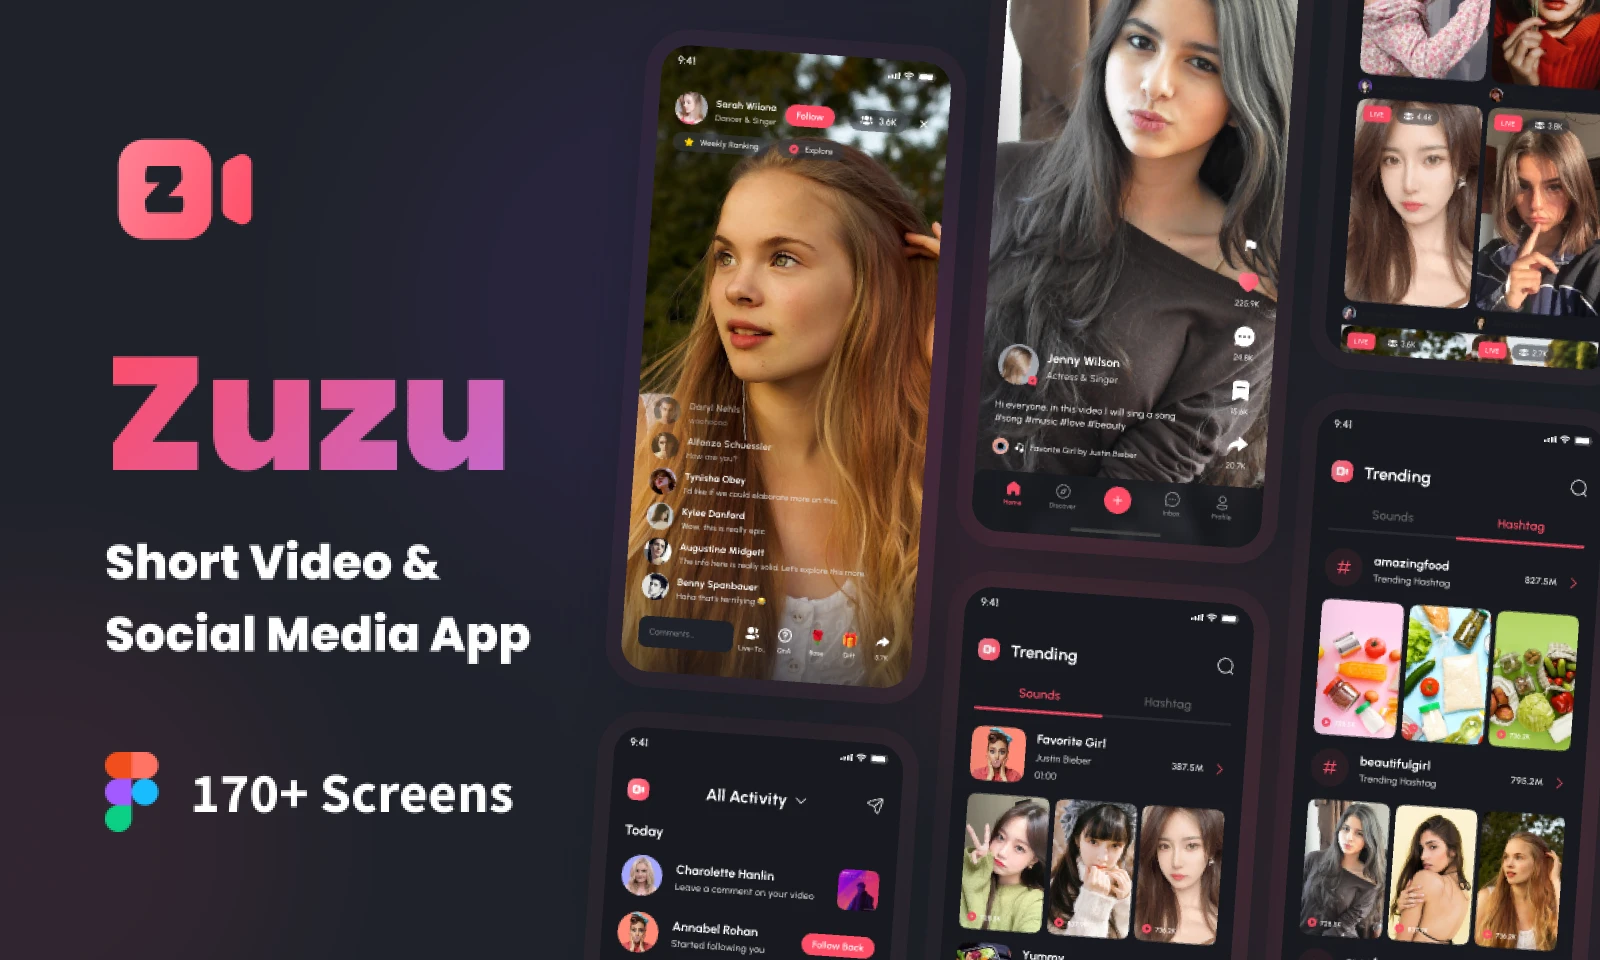 Zuzu - Short Video & Social Media App UI Kit for Figma and Adobe XD